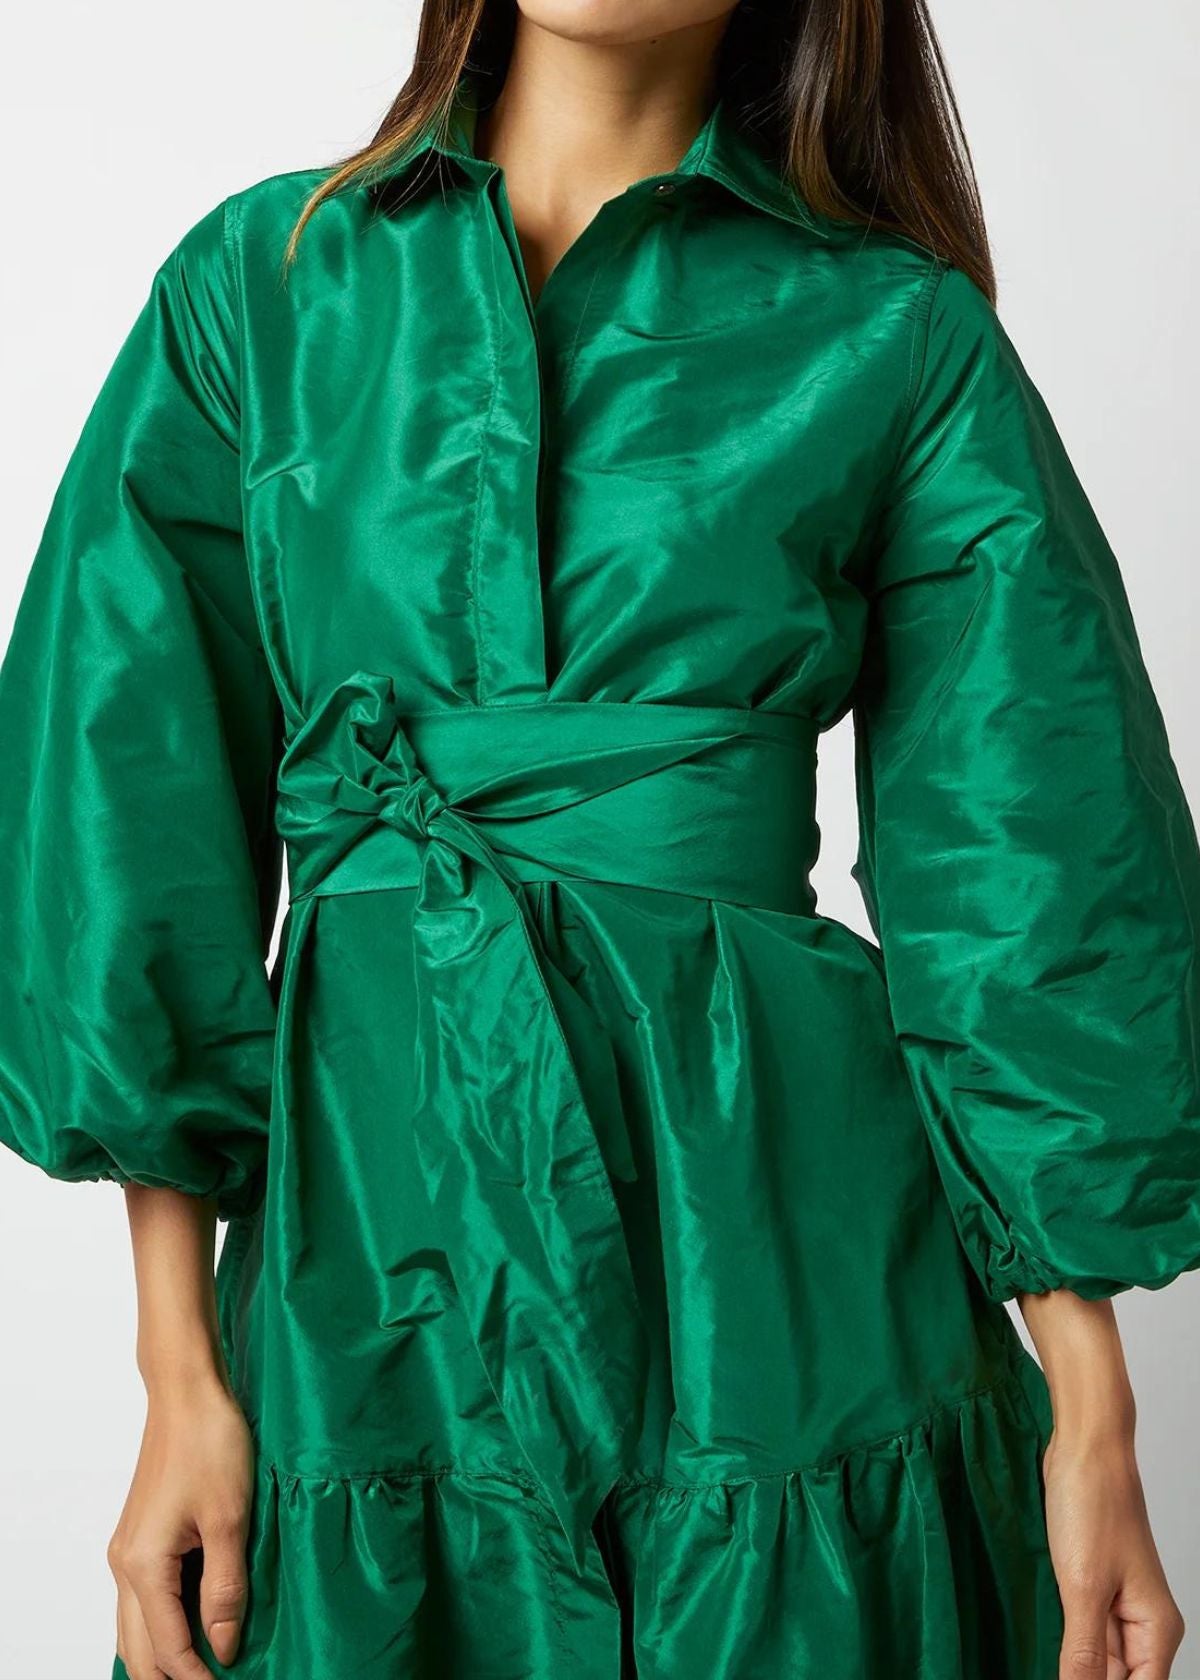 ANN MASHBURN Isla Shirtdress - Green Silk Taffeta